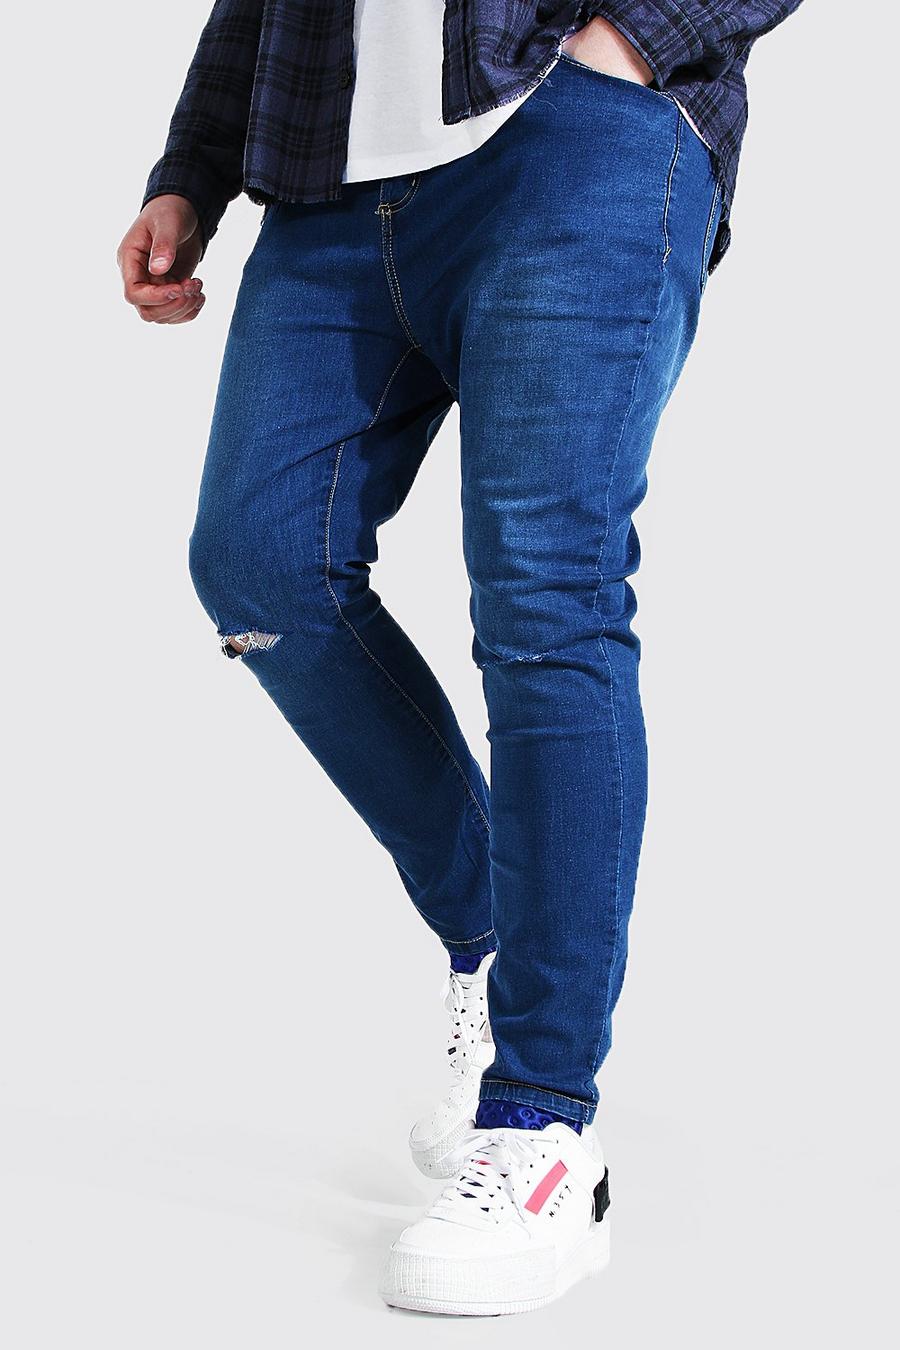 כחול ביניים azul סופר סקיני ג'ינס עם חריצים בברכיים לגברים גדולים וגבוהים